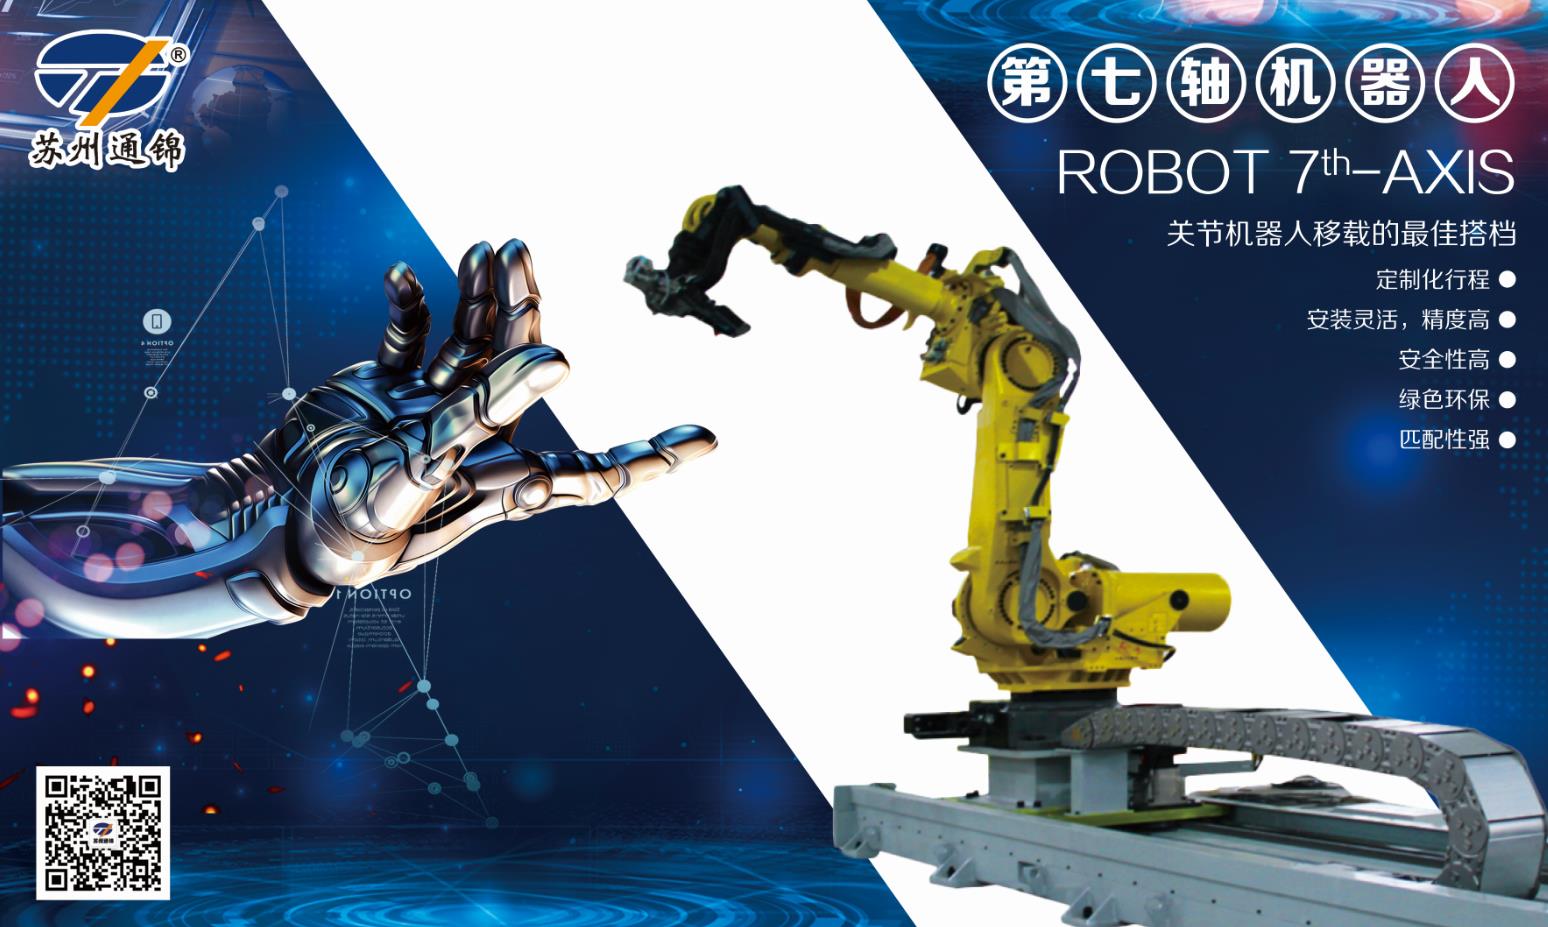 【展會專欄】2019中國工博會機器人展，我們蓄勢待發！